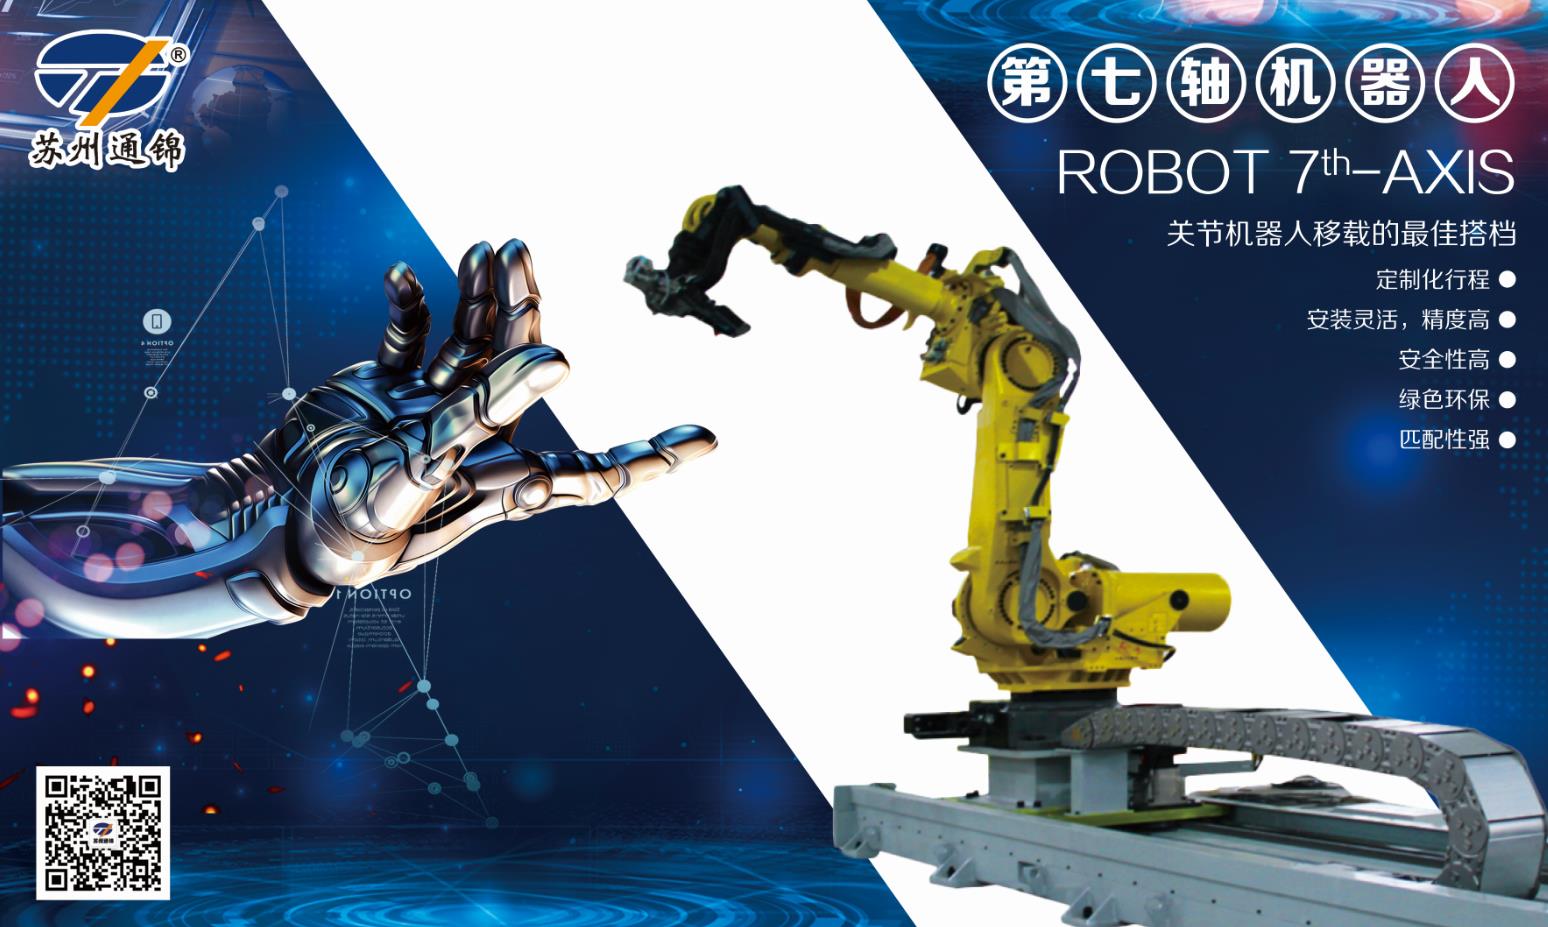 【展會專欄】2019中國工博會機器人展，我們蓄勢待發！